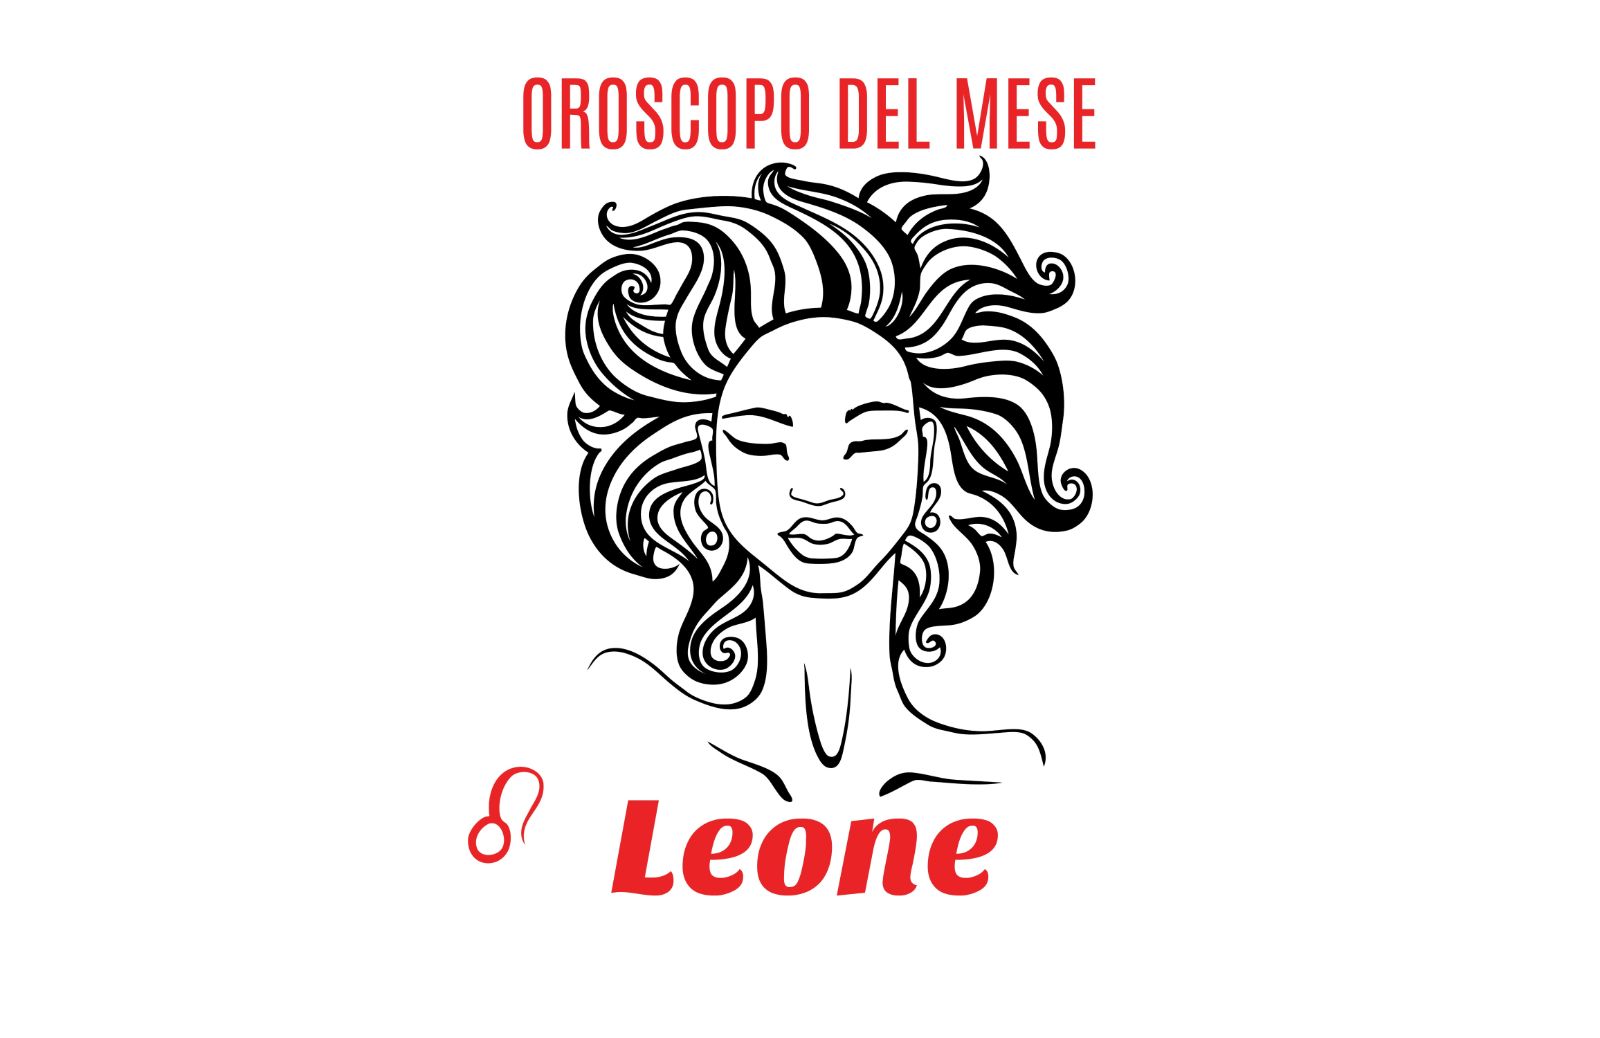 Oroscopo del mese: Leone - ottobre 2020